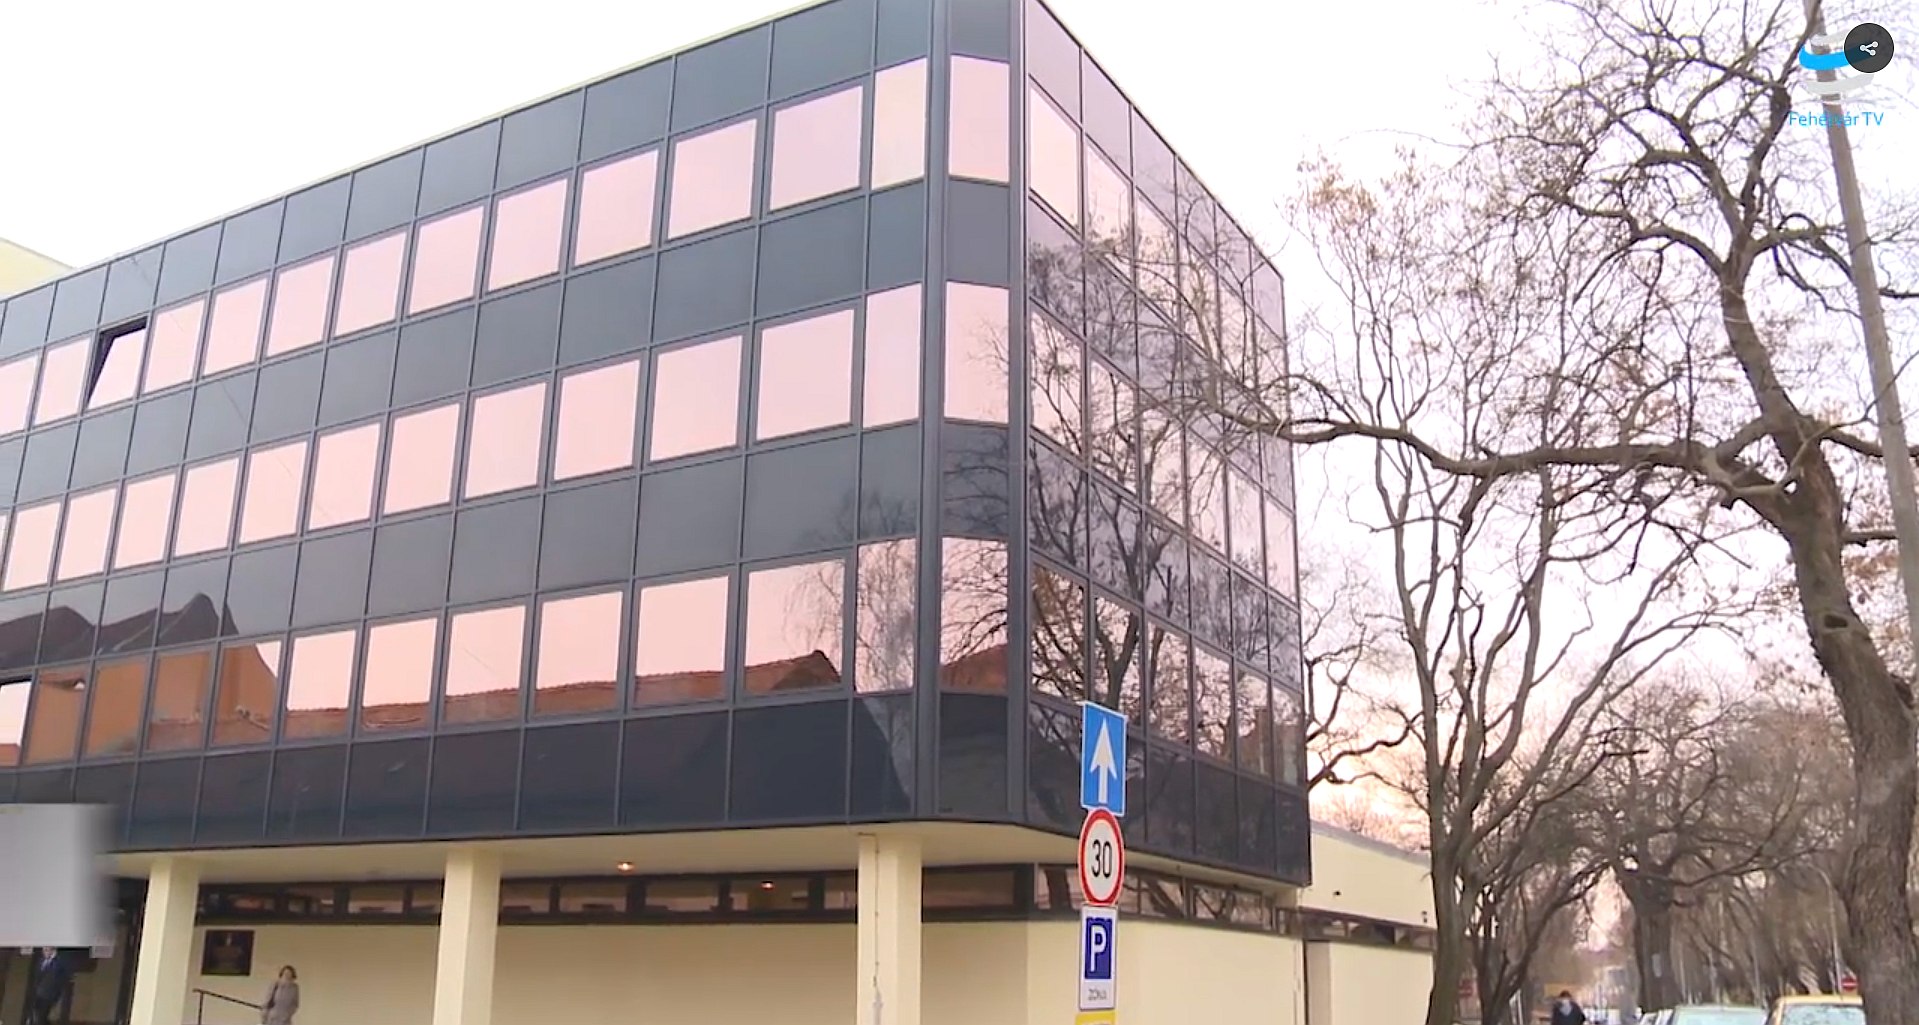 Elkészültek az energetikai felújítások a Székesfehérvári Járási Hivatal épületeiben